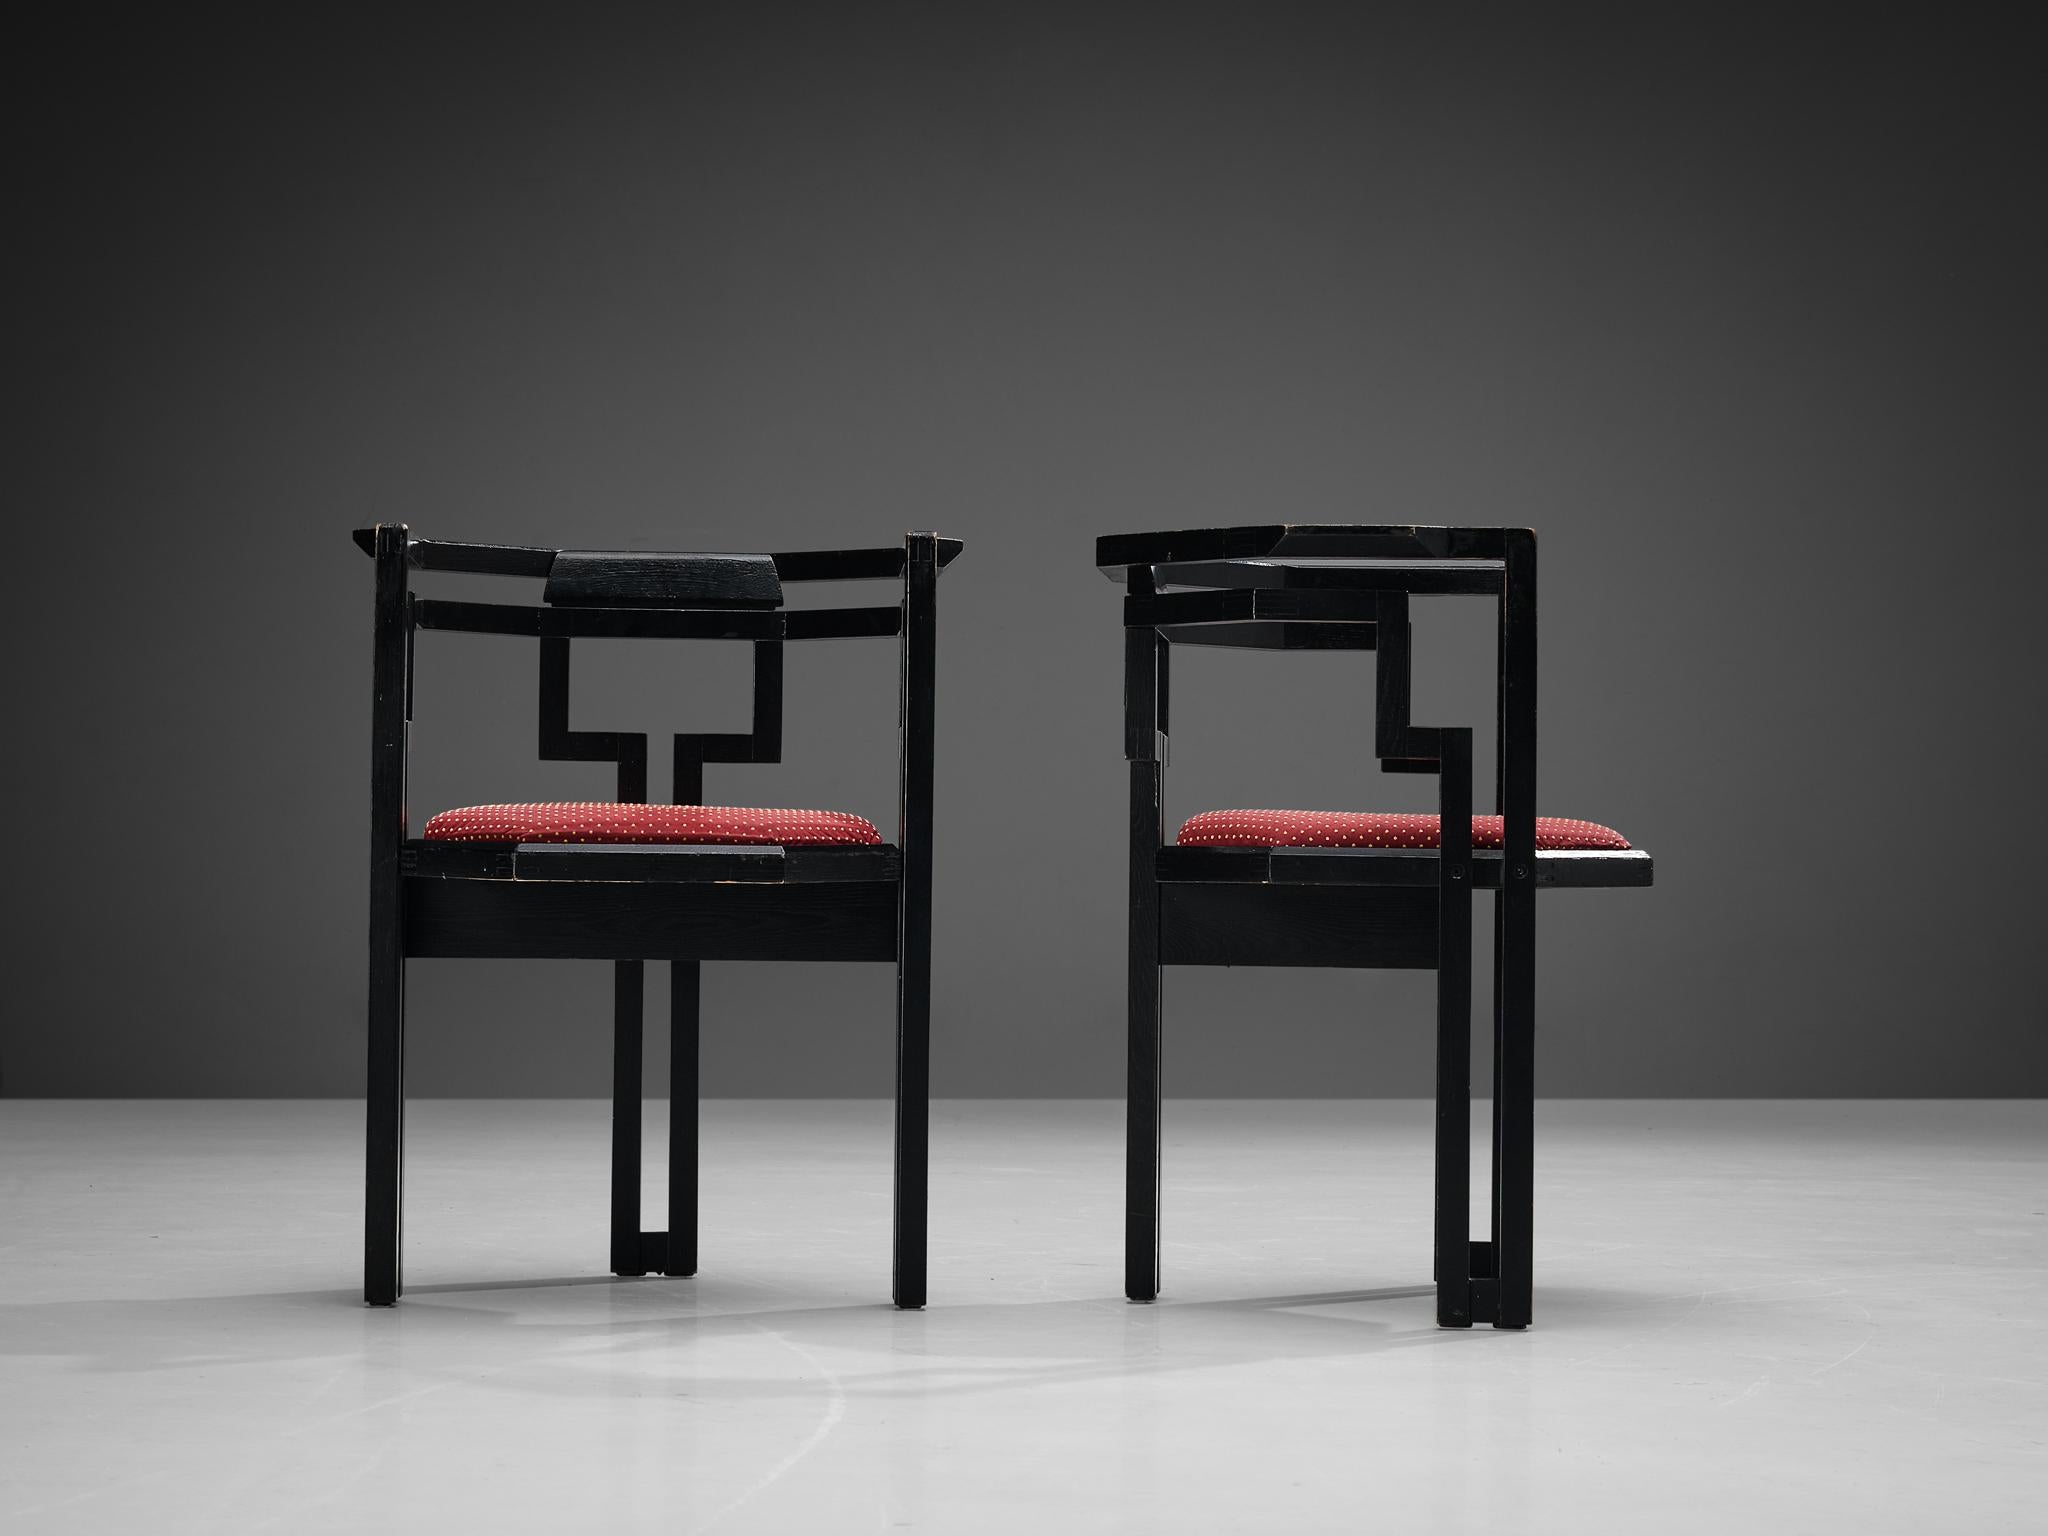 Paire de chaises de salle à manger, chêne laqué noir, tissu, Italie, années 1970

Exceptionnelle paire de chaises de salle à manger italiennes géométriques. Ces chaises combinent un design sculptural simple, mais très fort en termes de lignes et de